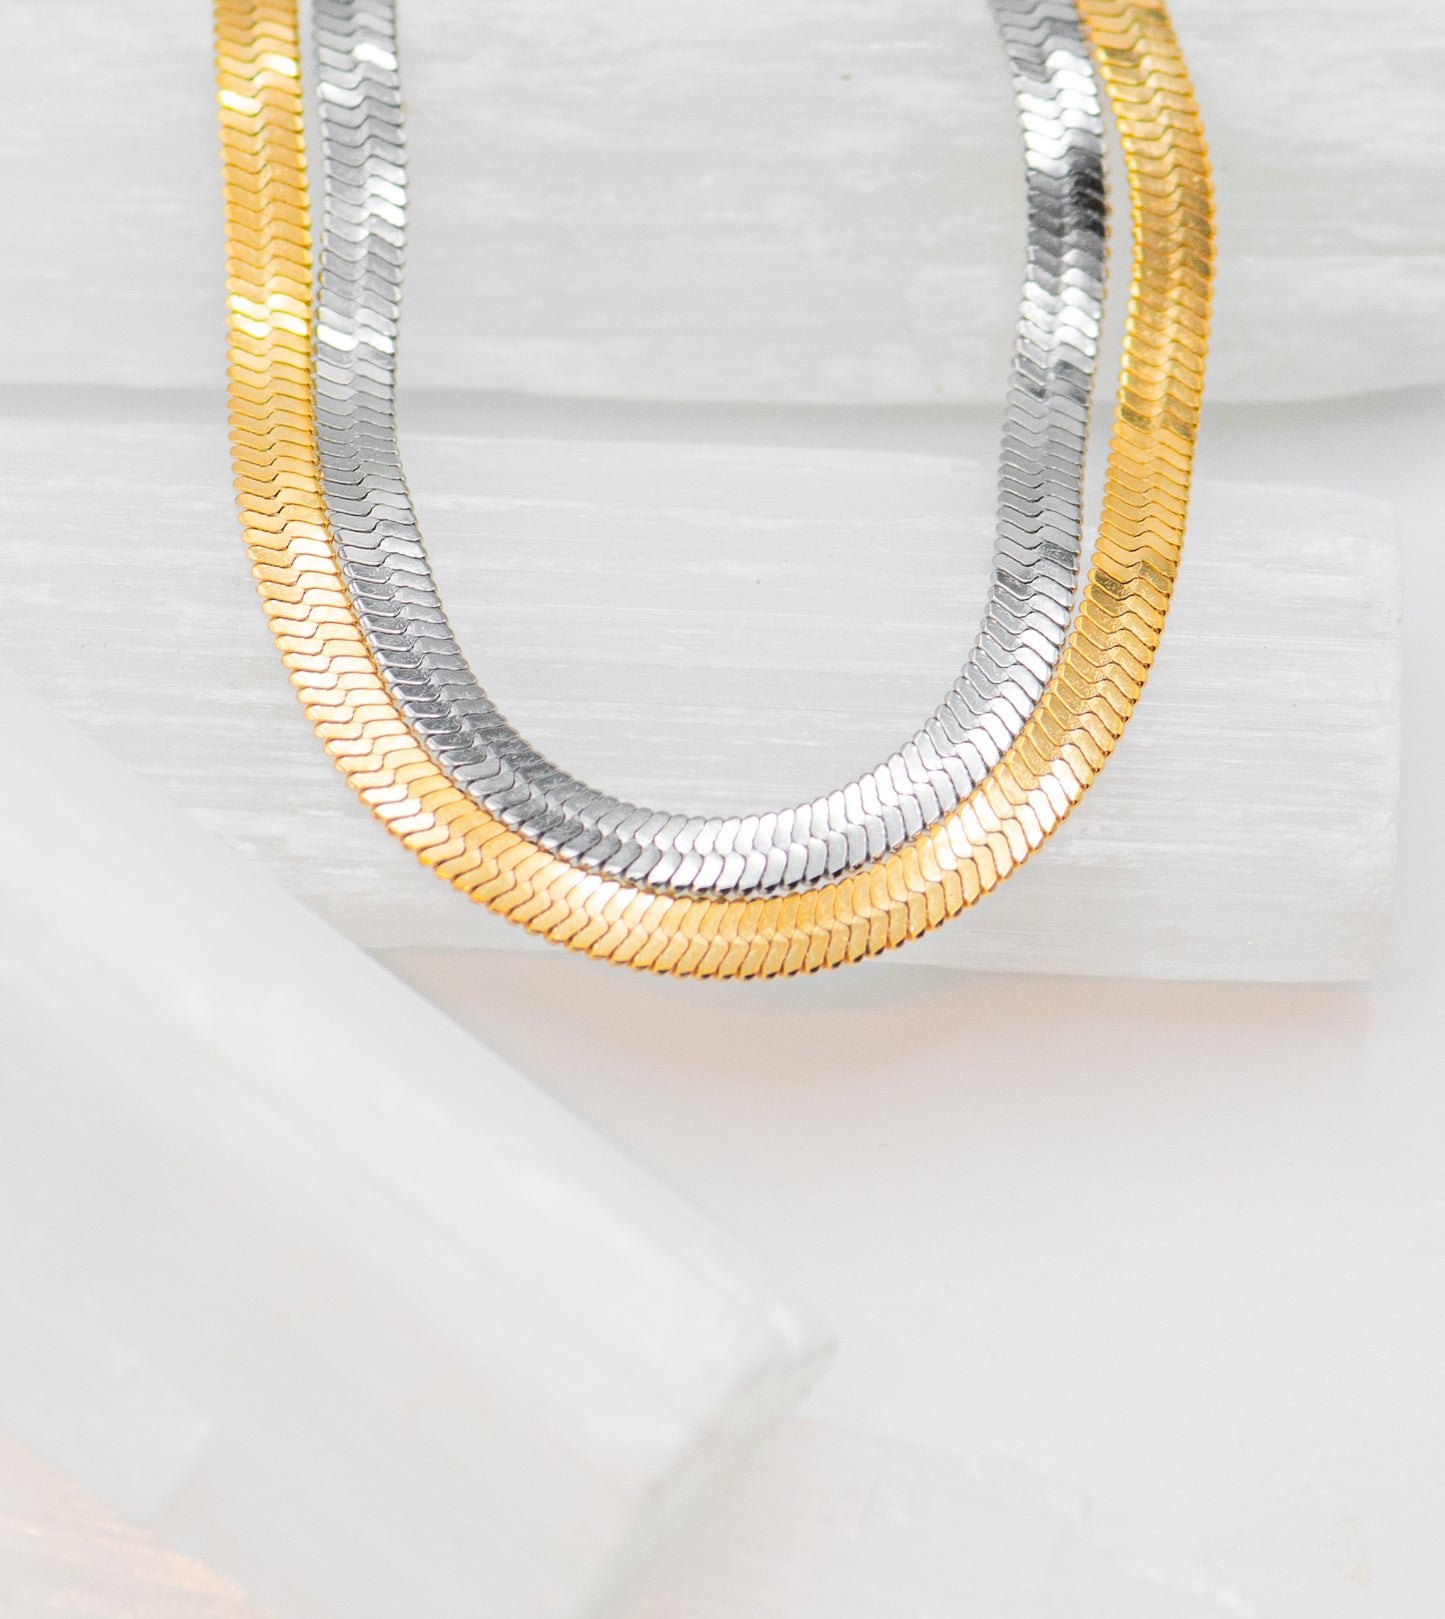 Cheyenne Herringbone Chain Bracelet